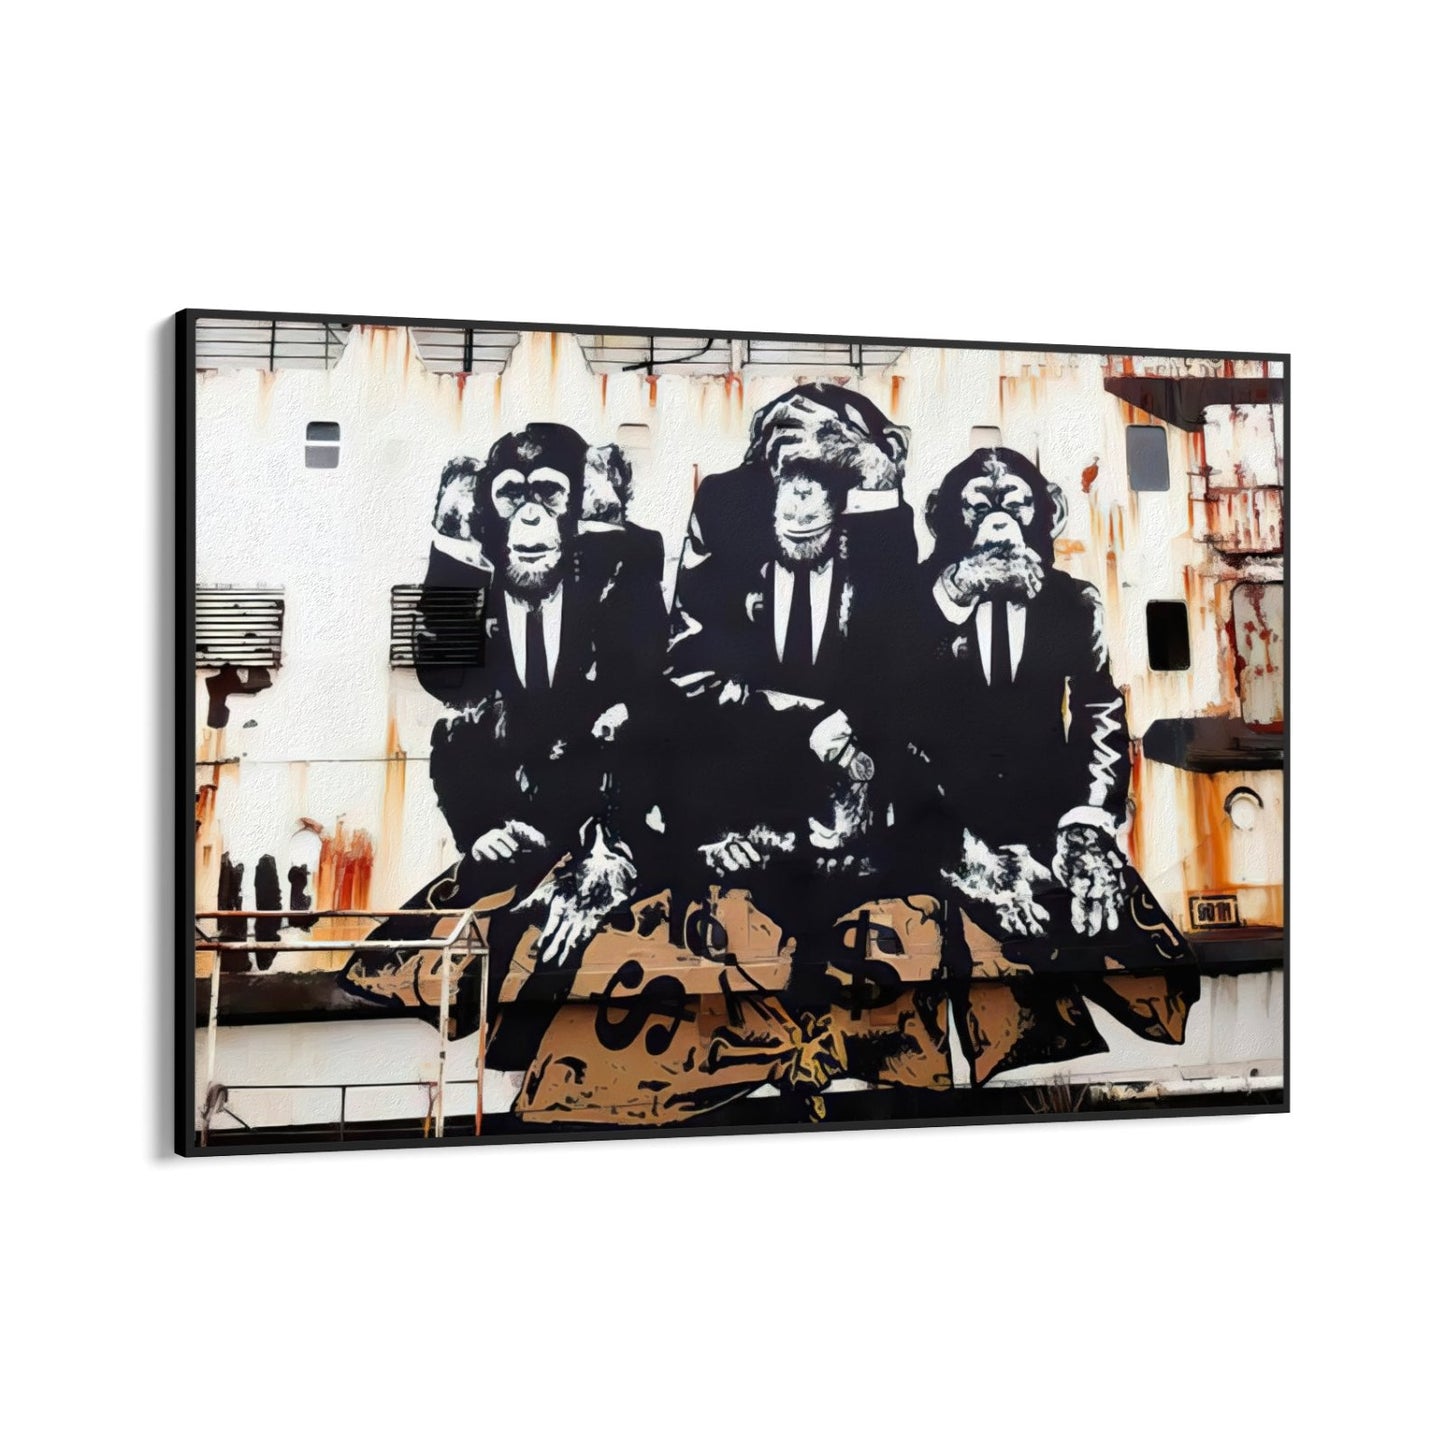 Tri poslovna majmuna, Banksy